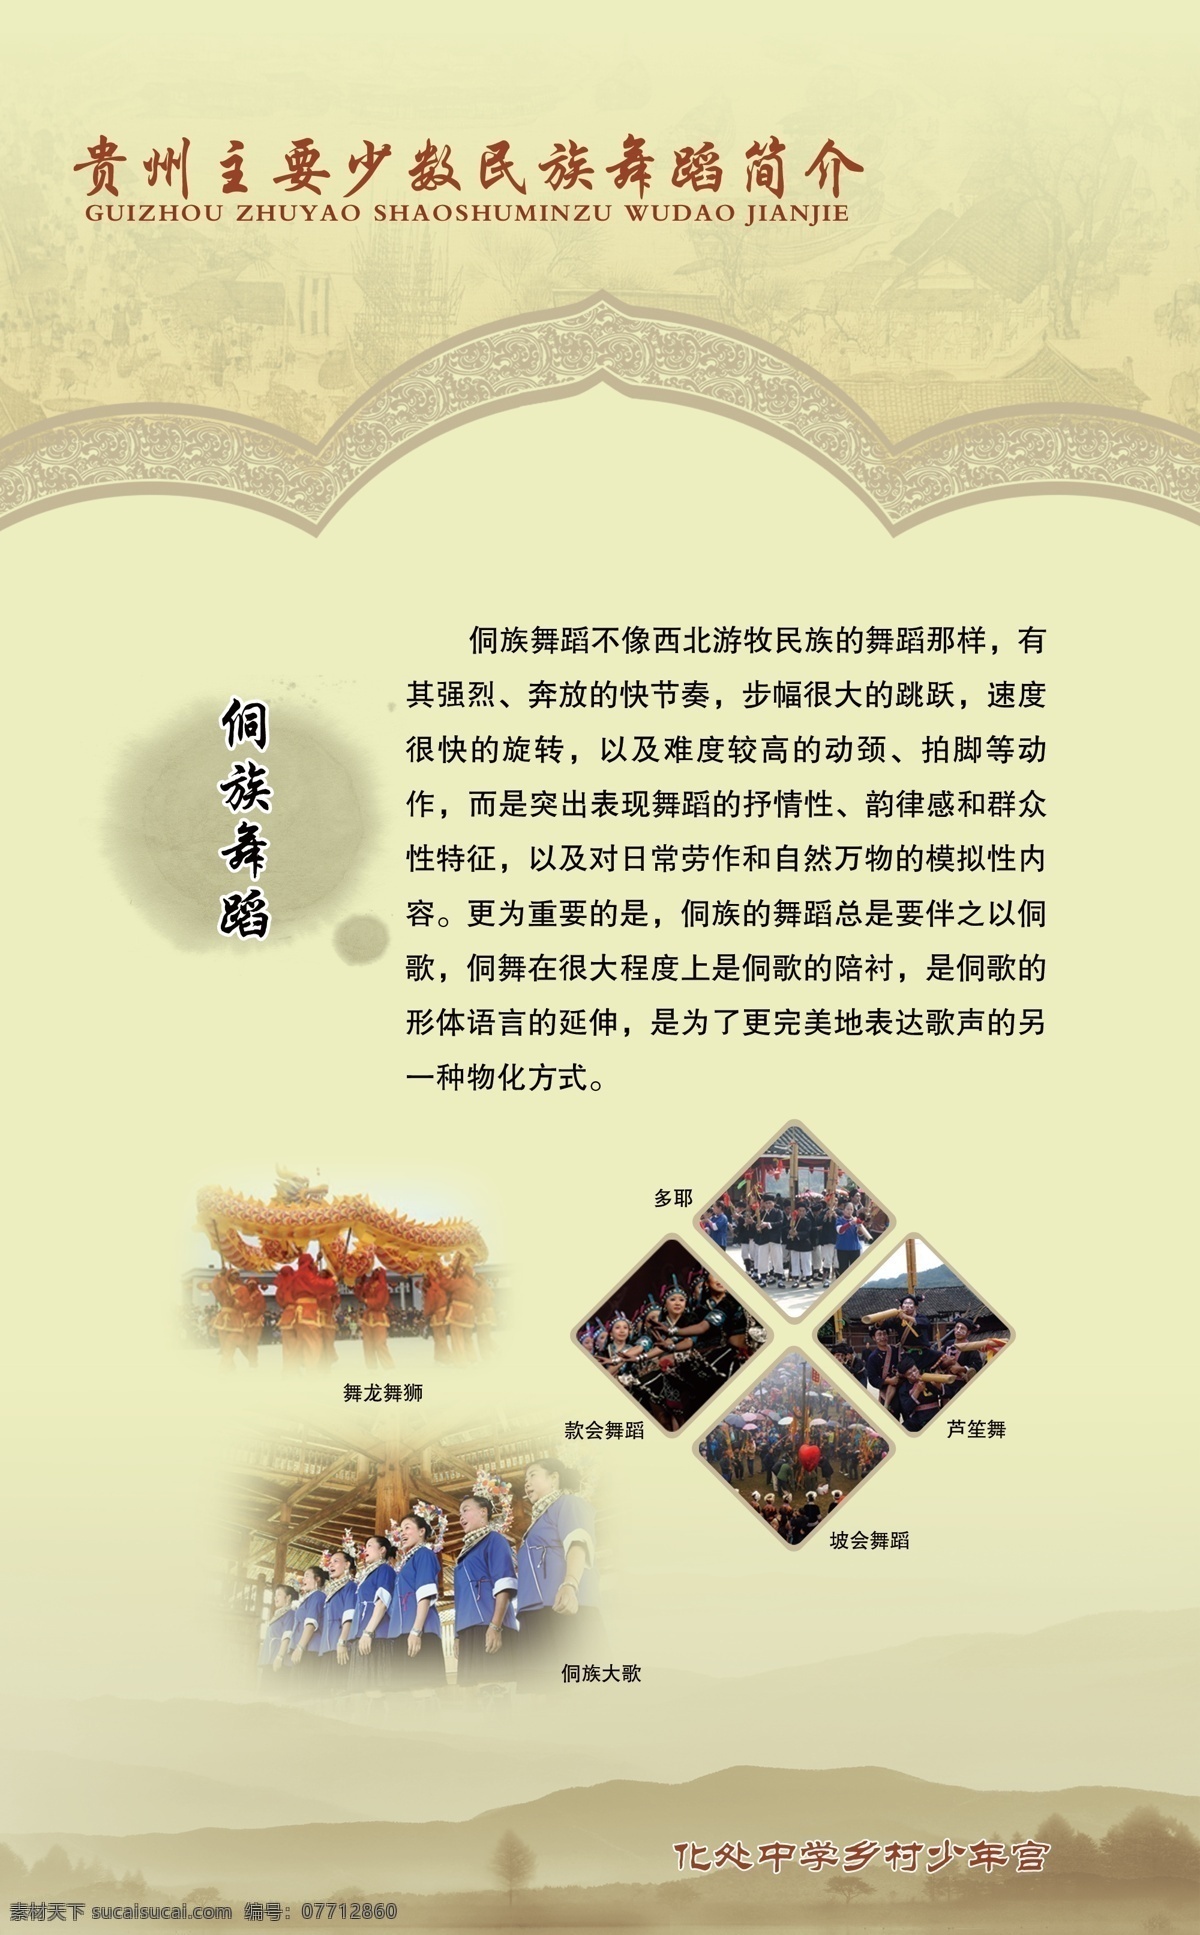 校园文化 广告设计模板 校园展板 源文件 展板模板 名族文化 名族舞蹈 少数名族 侗族舞蹈 psd源文件